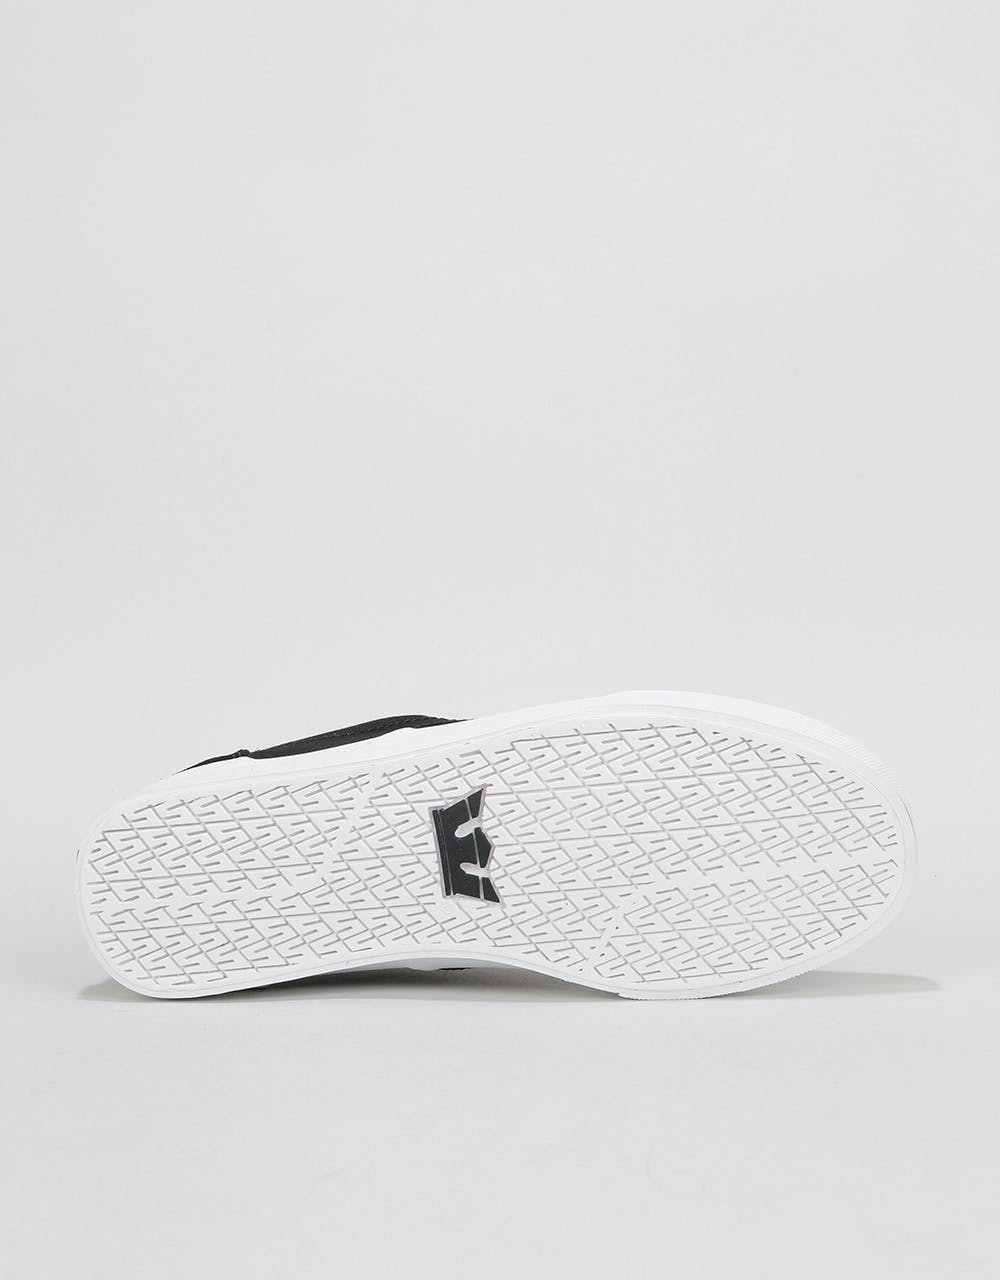 Supra Chino Skate Shoes - Black/White/White